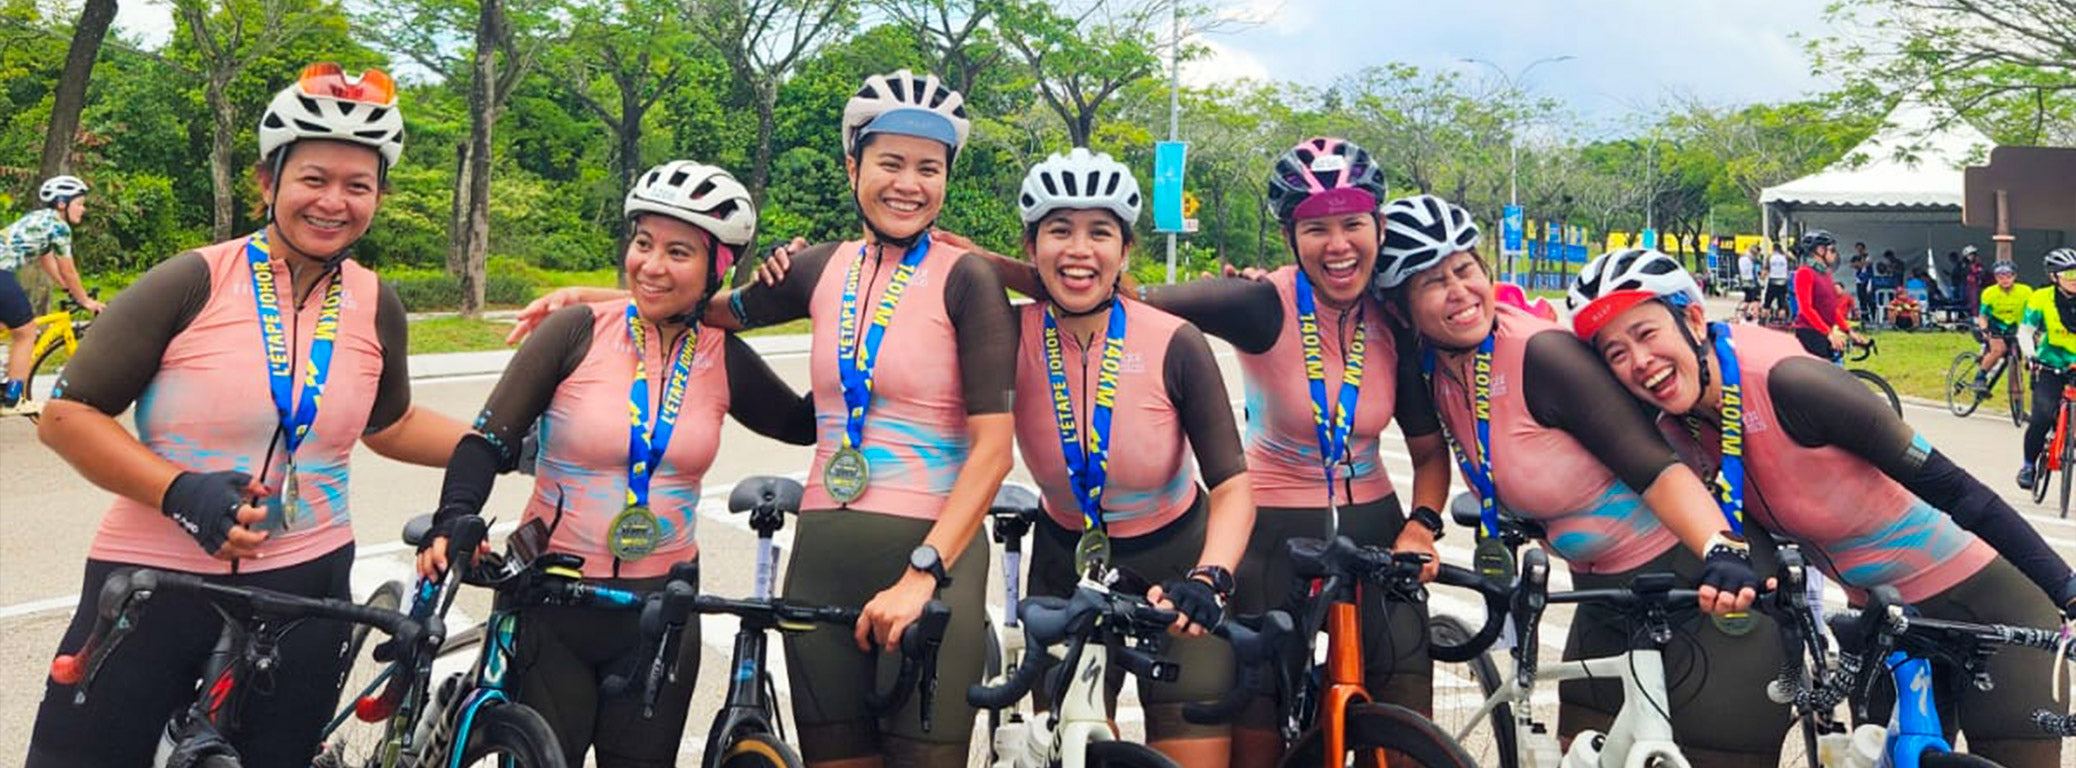 Die Pedal Bellas sind glücklich, nachdem sie als Team eine 140 km lange Radsport-Herausforderung gemeistert haben.